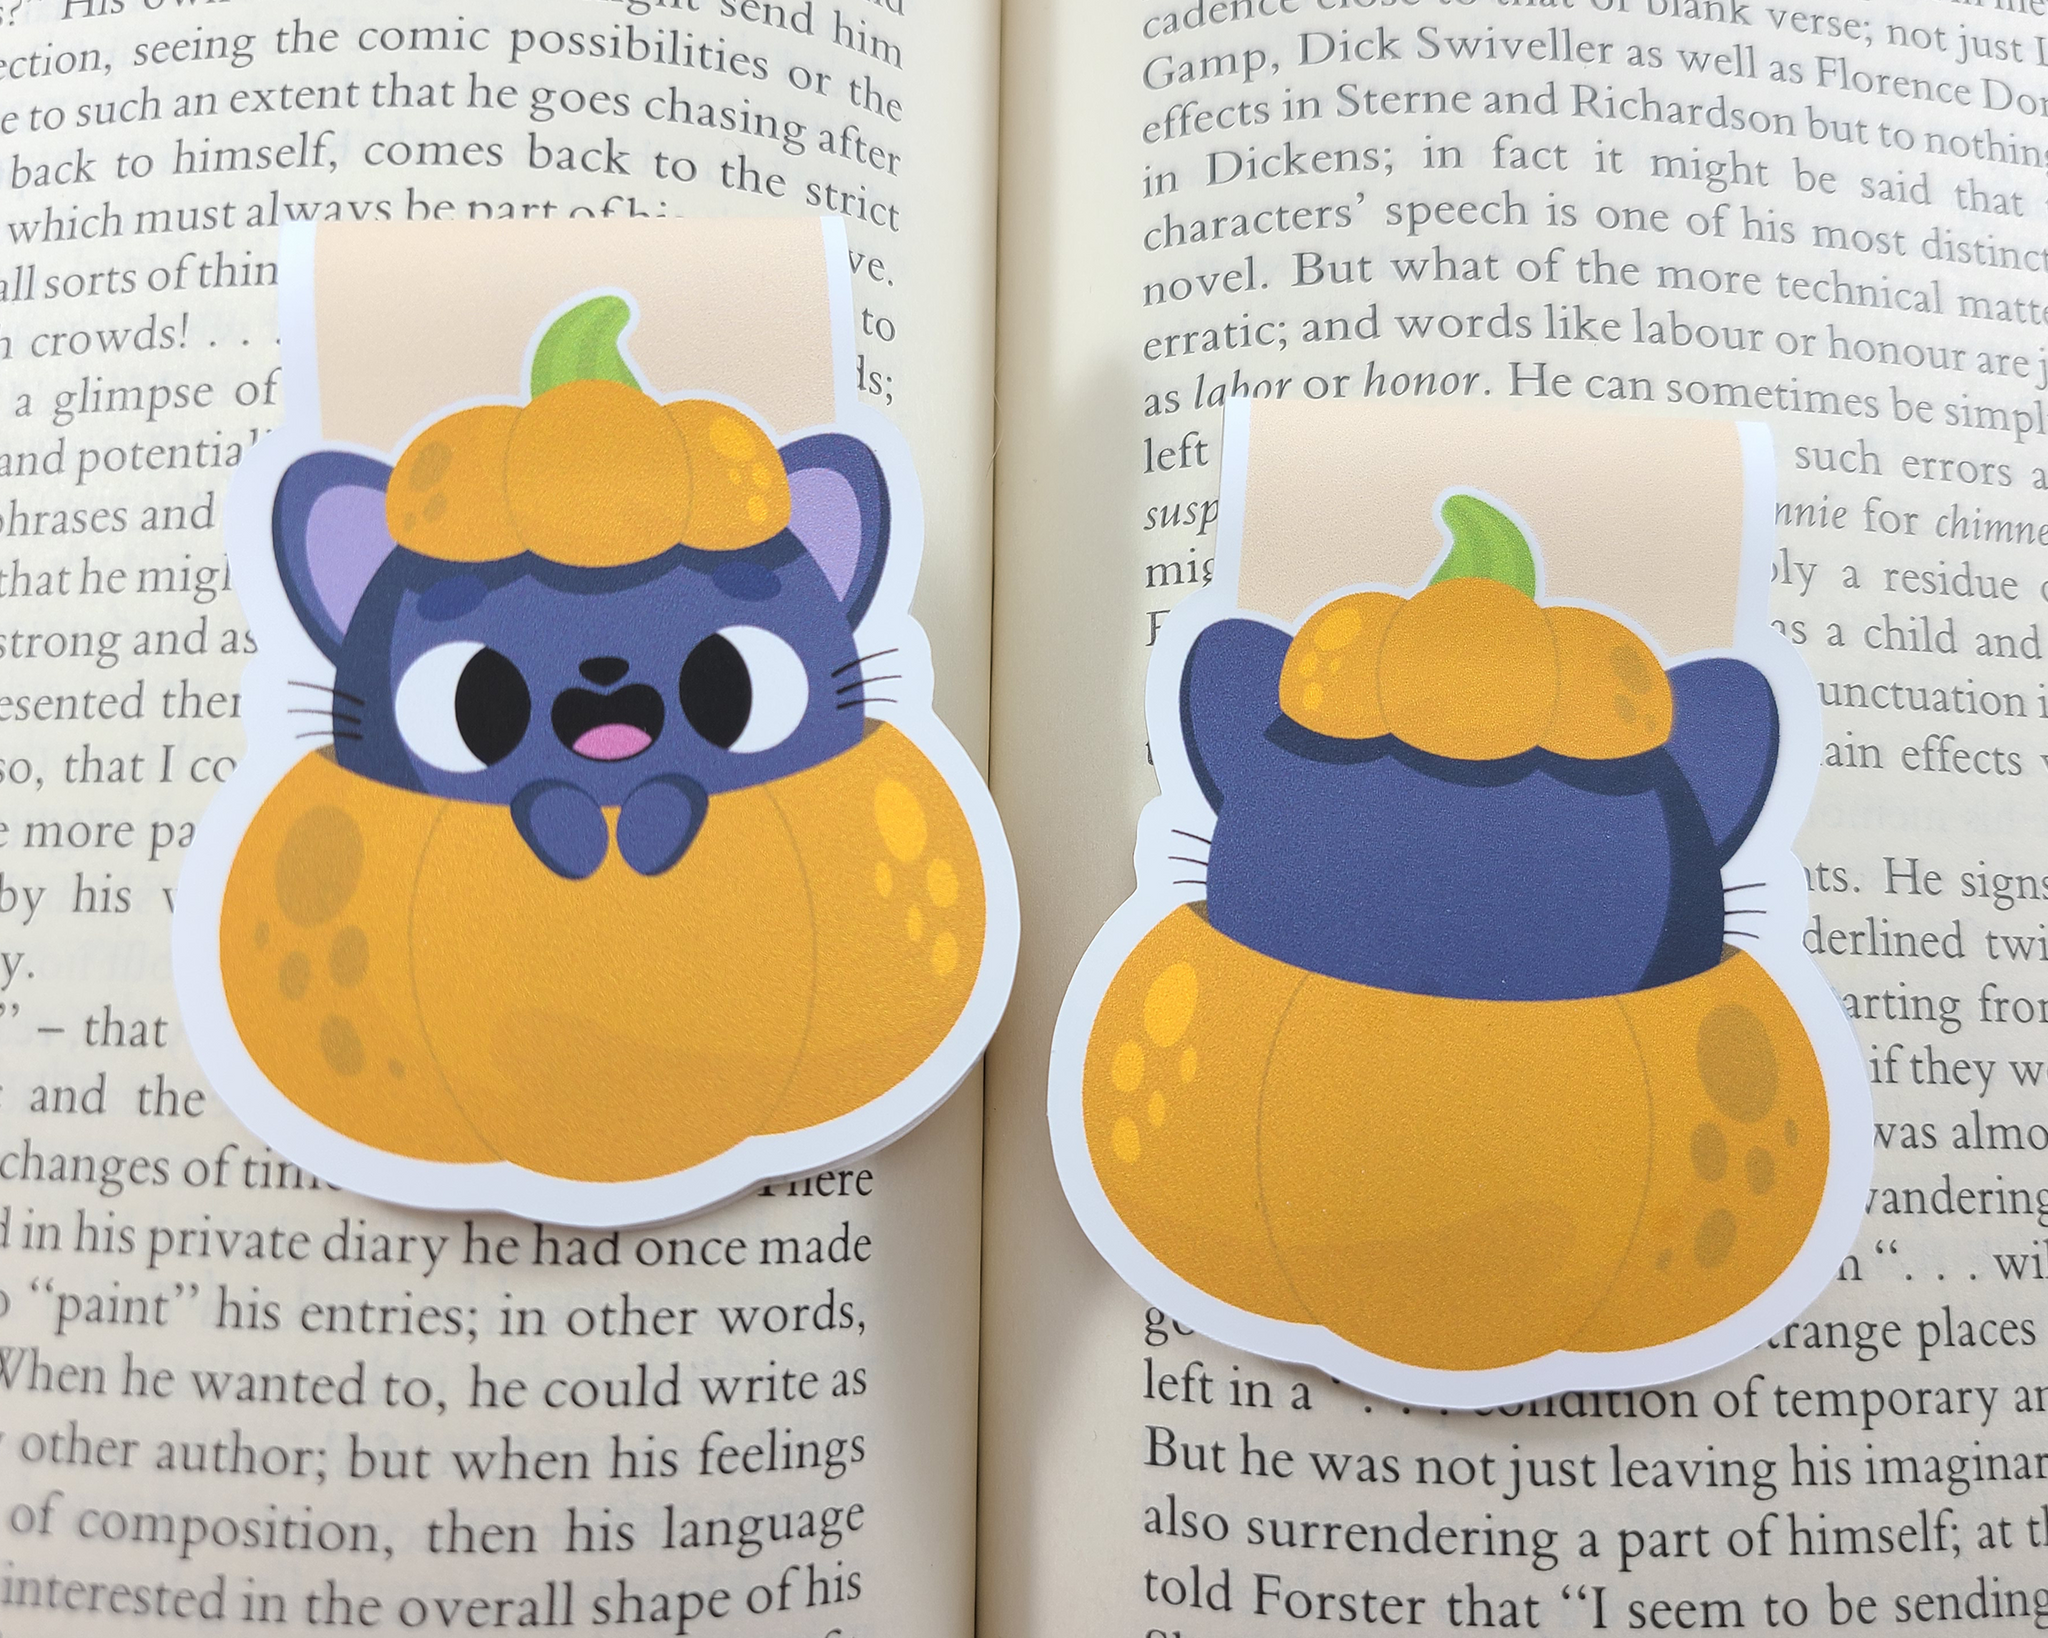 Halloween Cat In Pumpkin Magnetic Bookmark